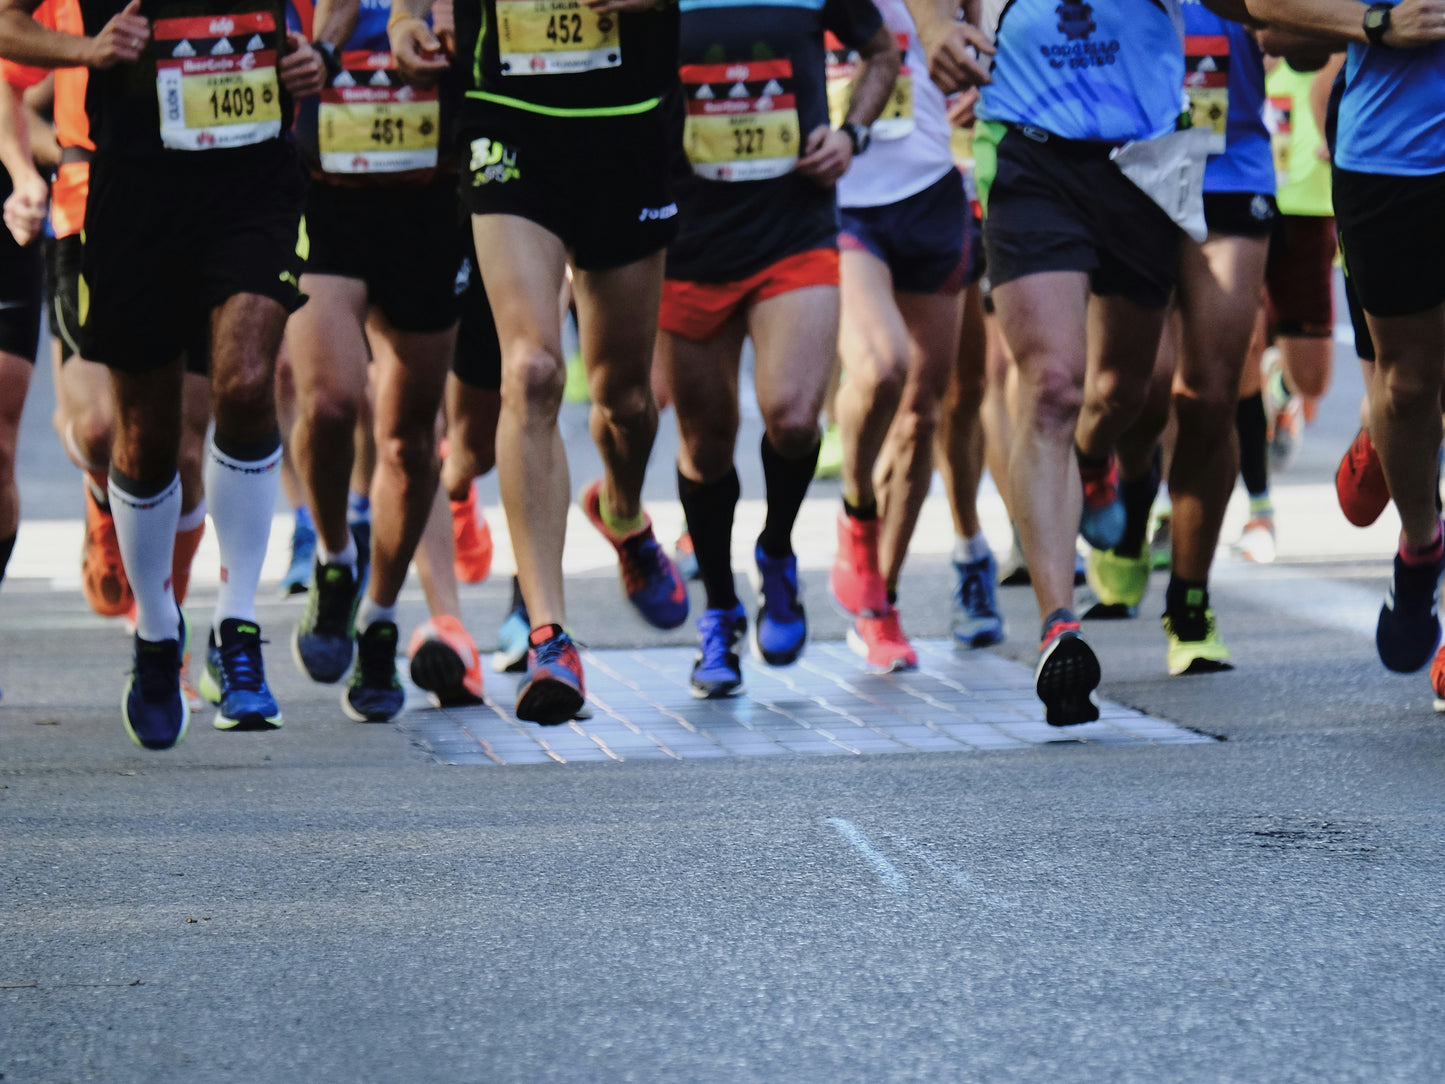 What It Takes To Run the London Marathon